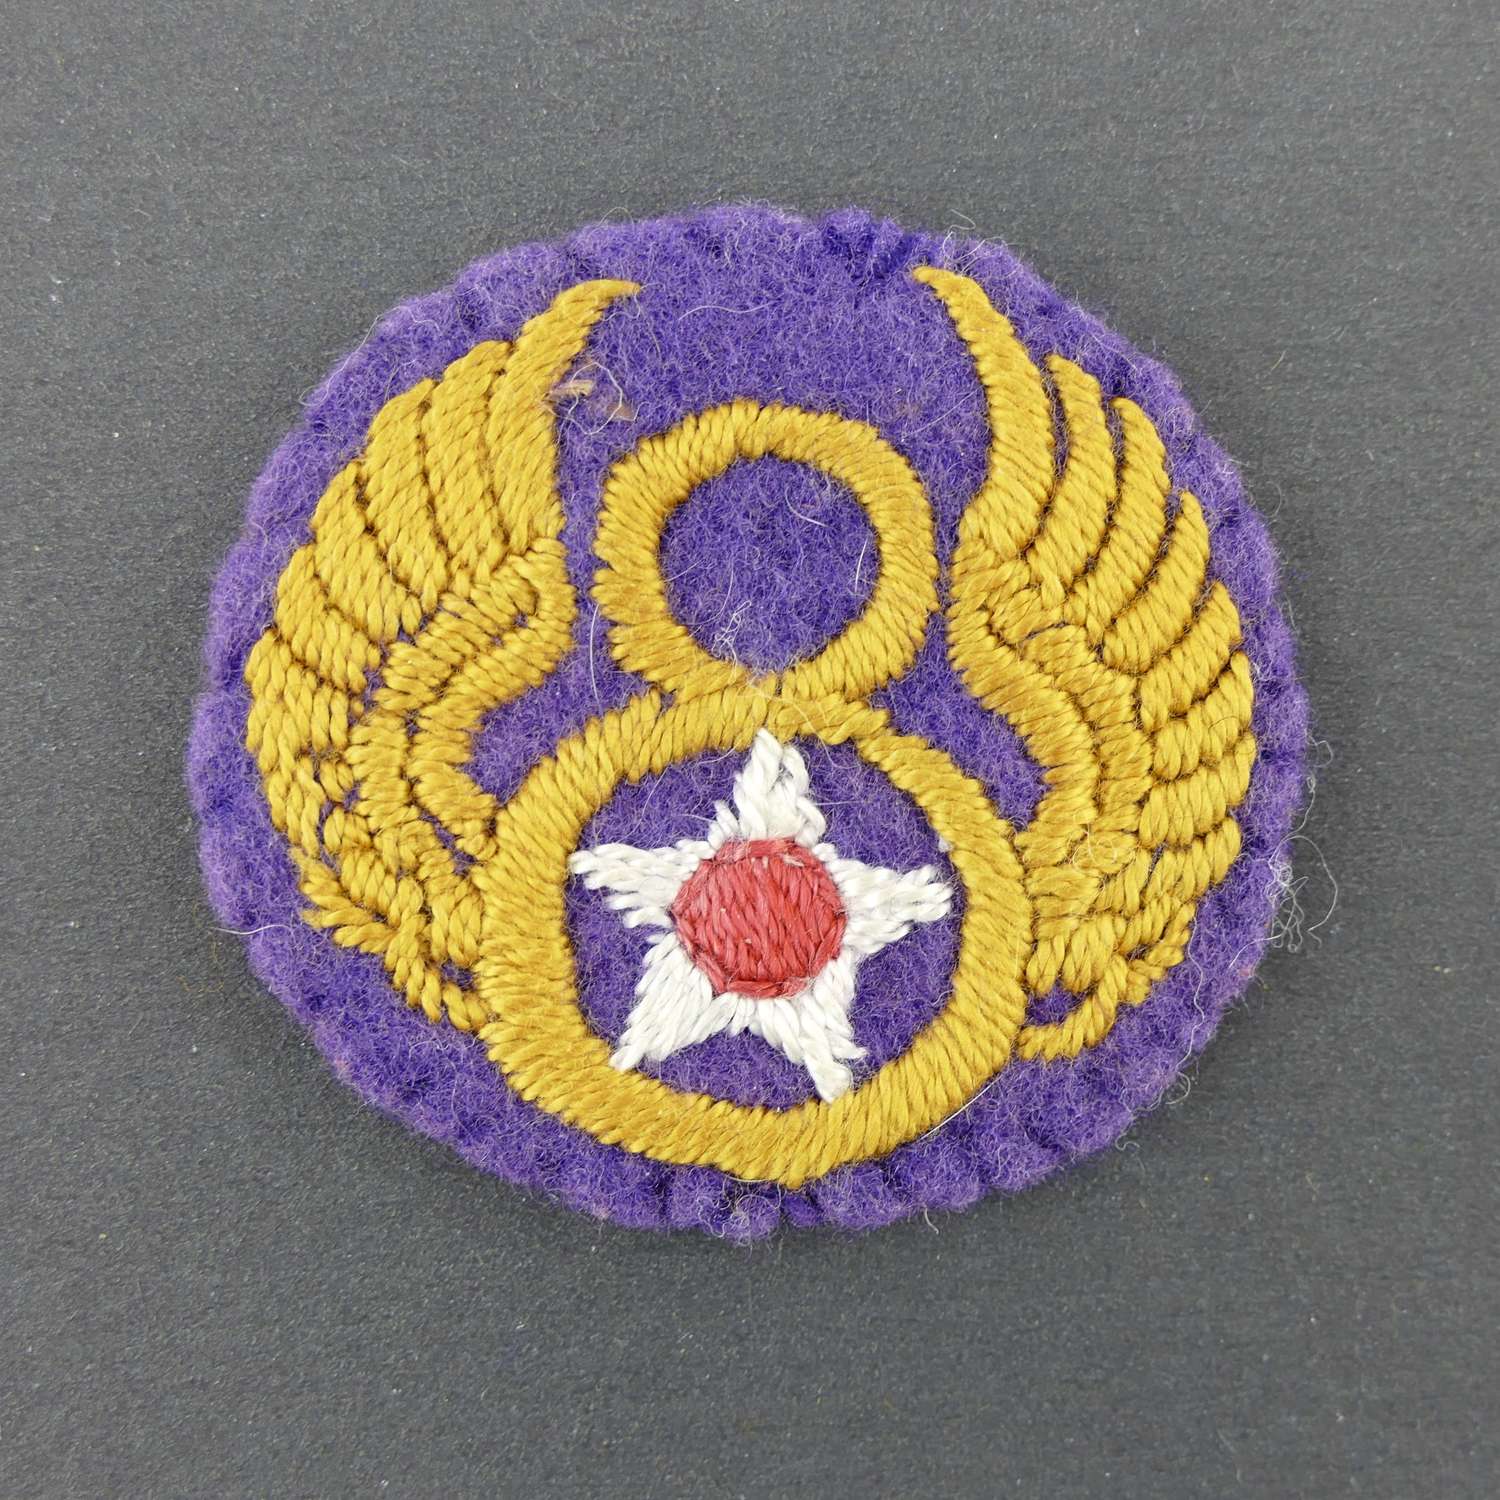 USAAF 8th AF shoulder patch - English made